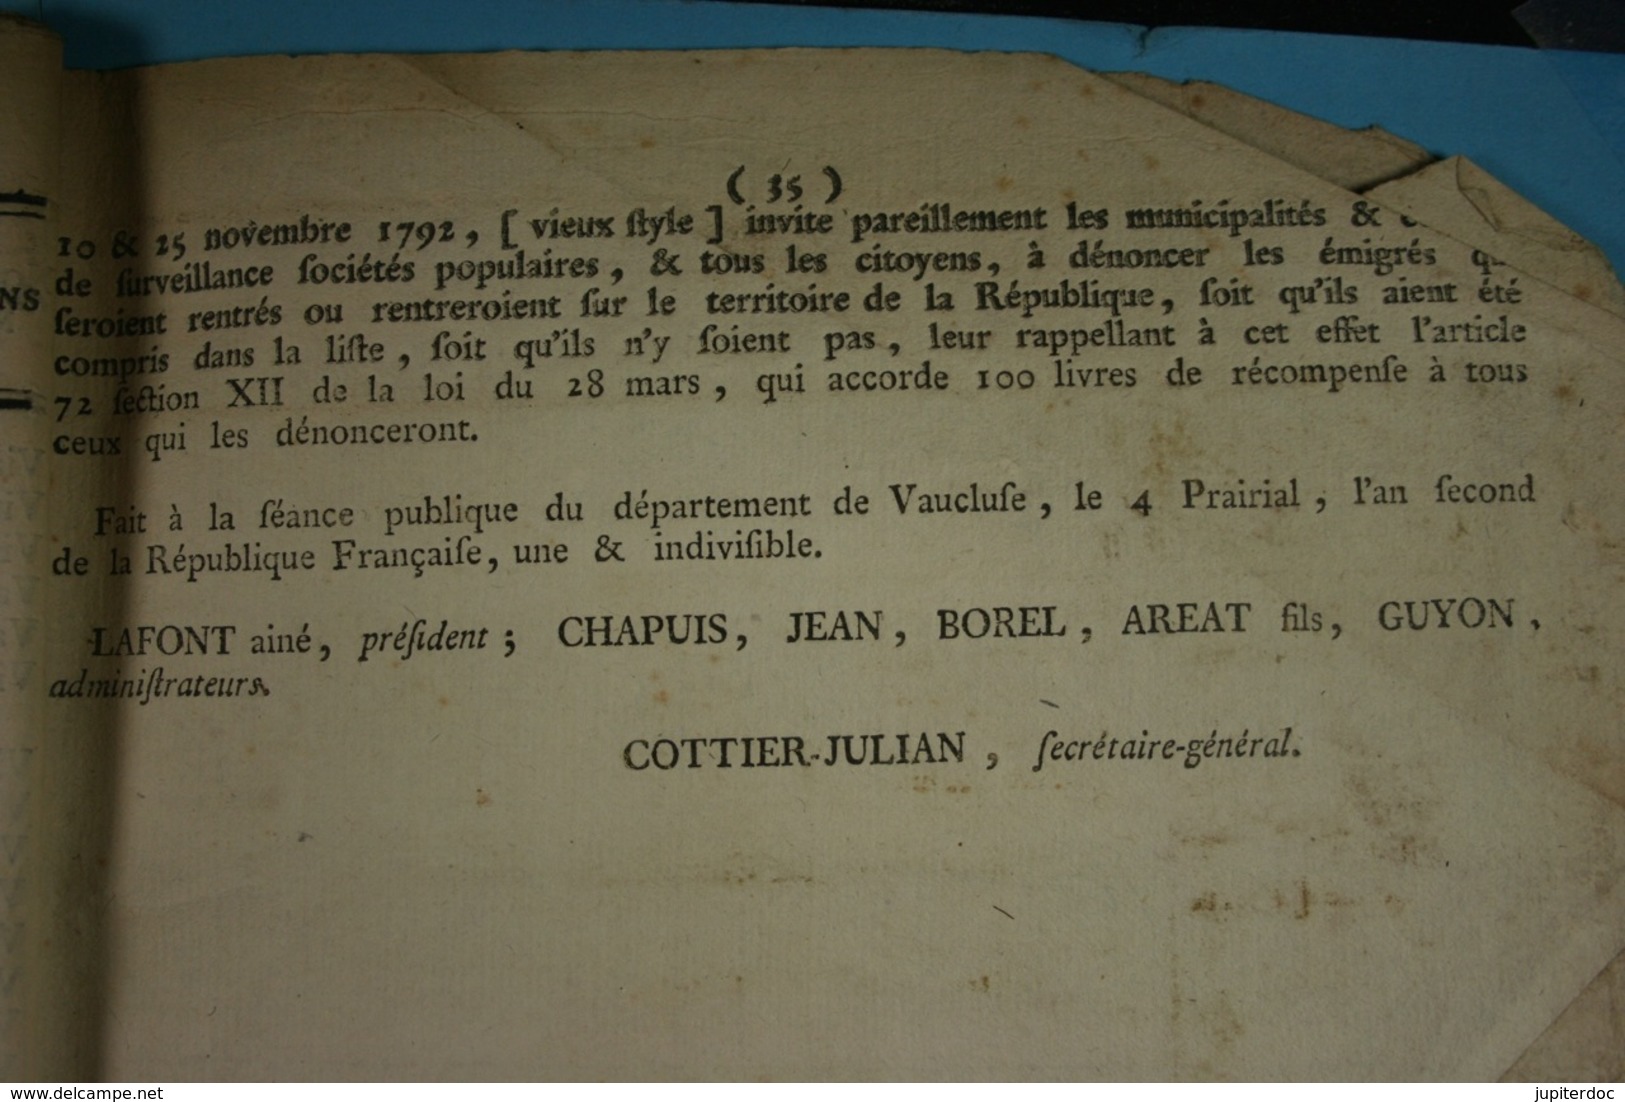 1793 Liste générale des émigrés du Département du Vaucluse (27)